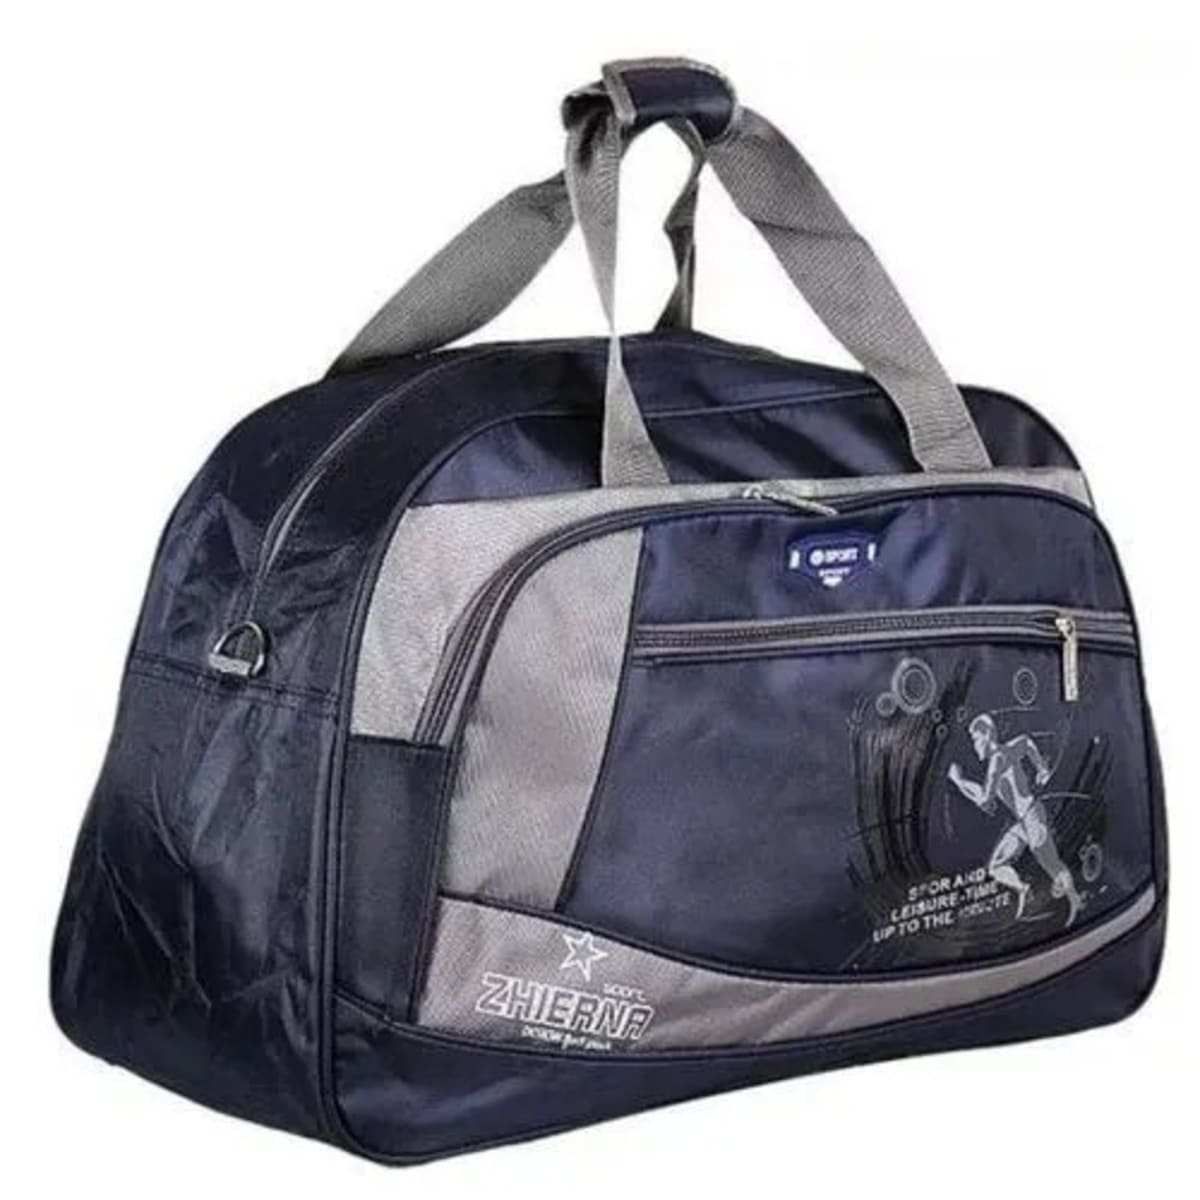 Tactical Tailor Range Bag Shoulder Strap | Free Shipping over $49!